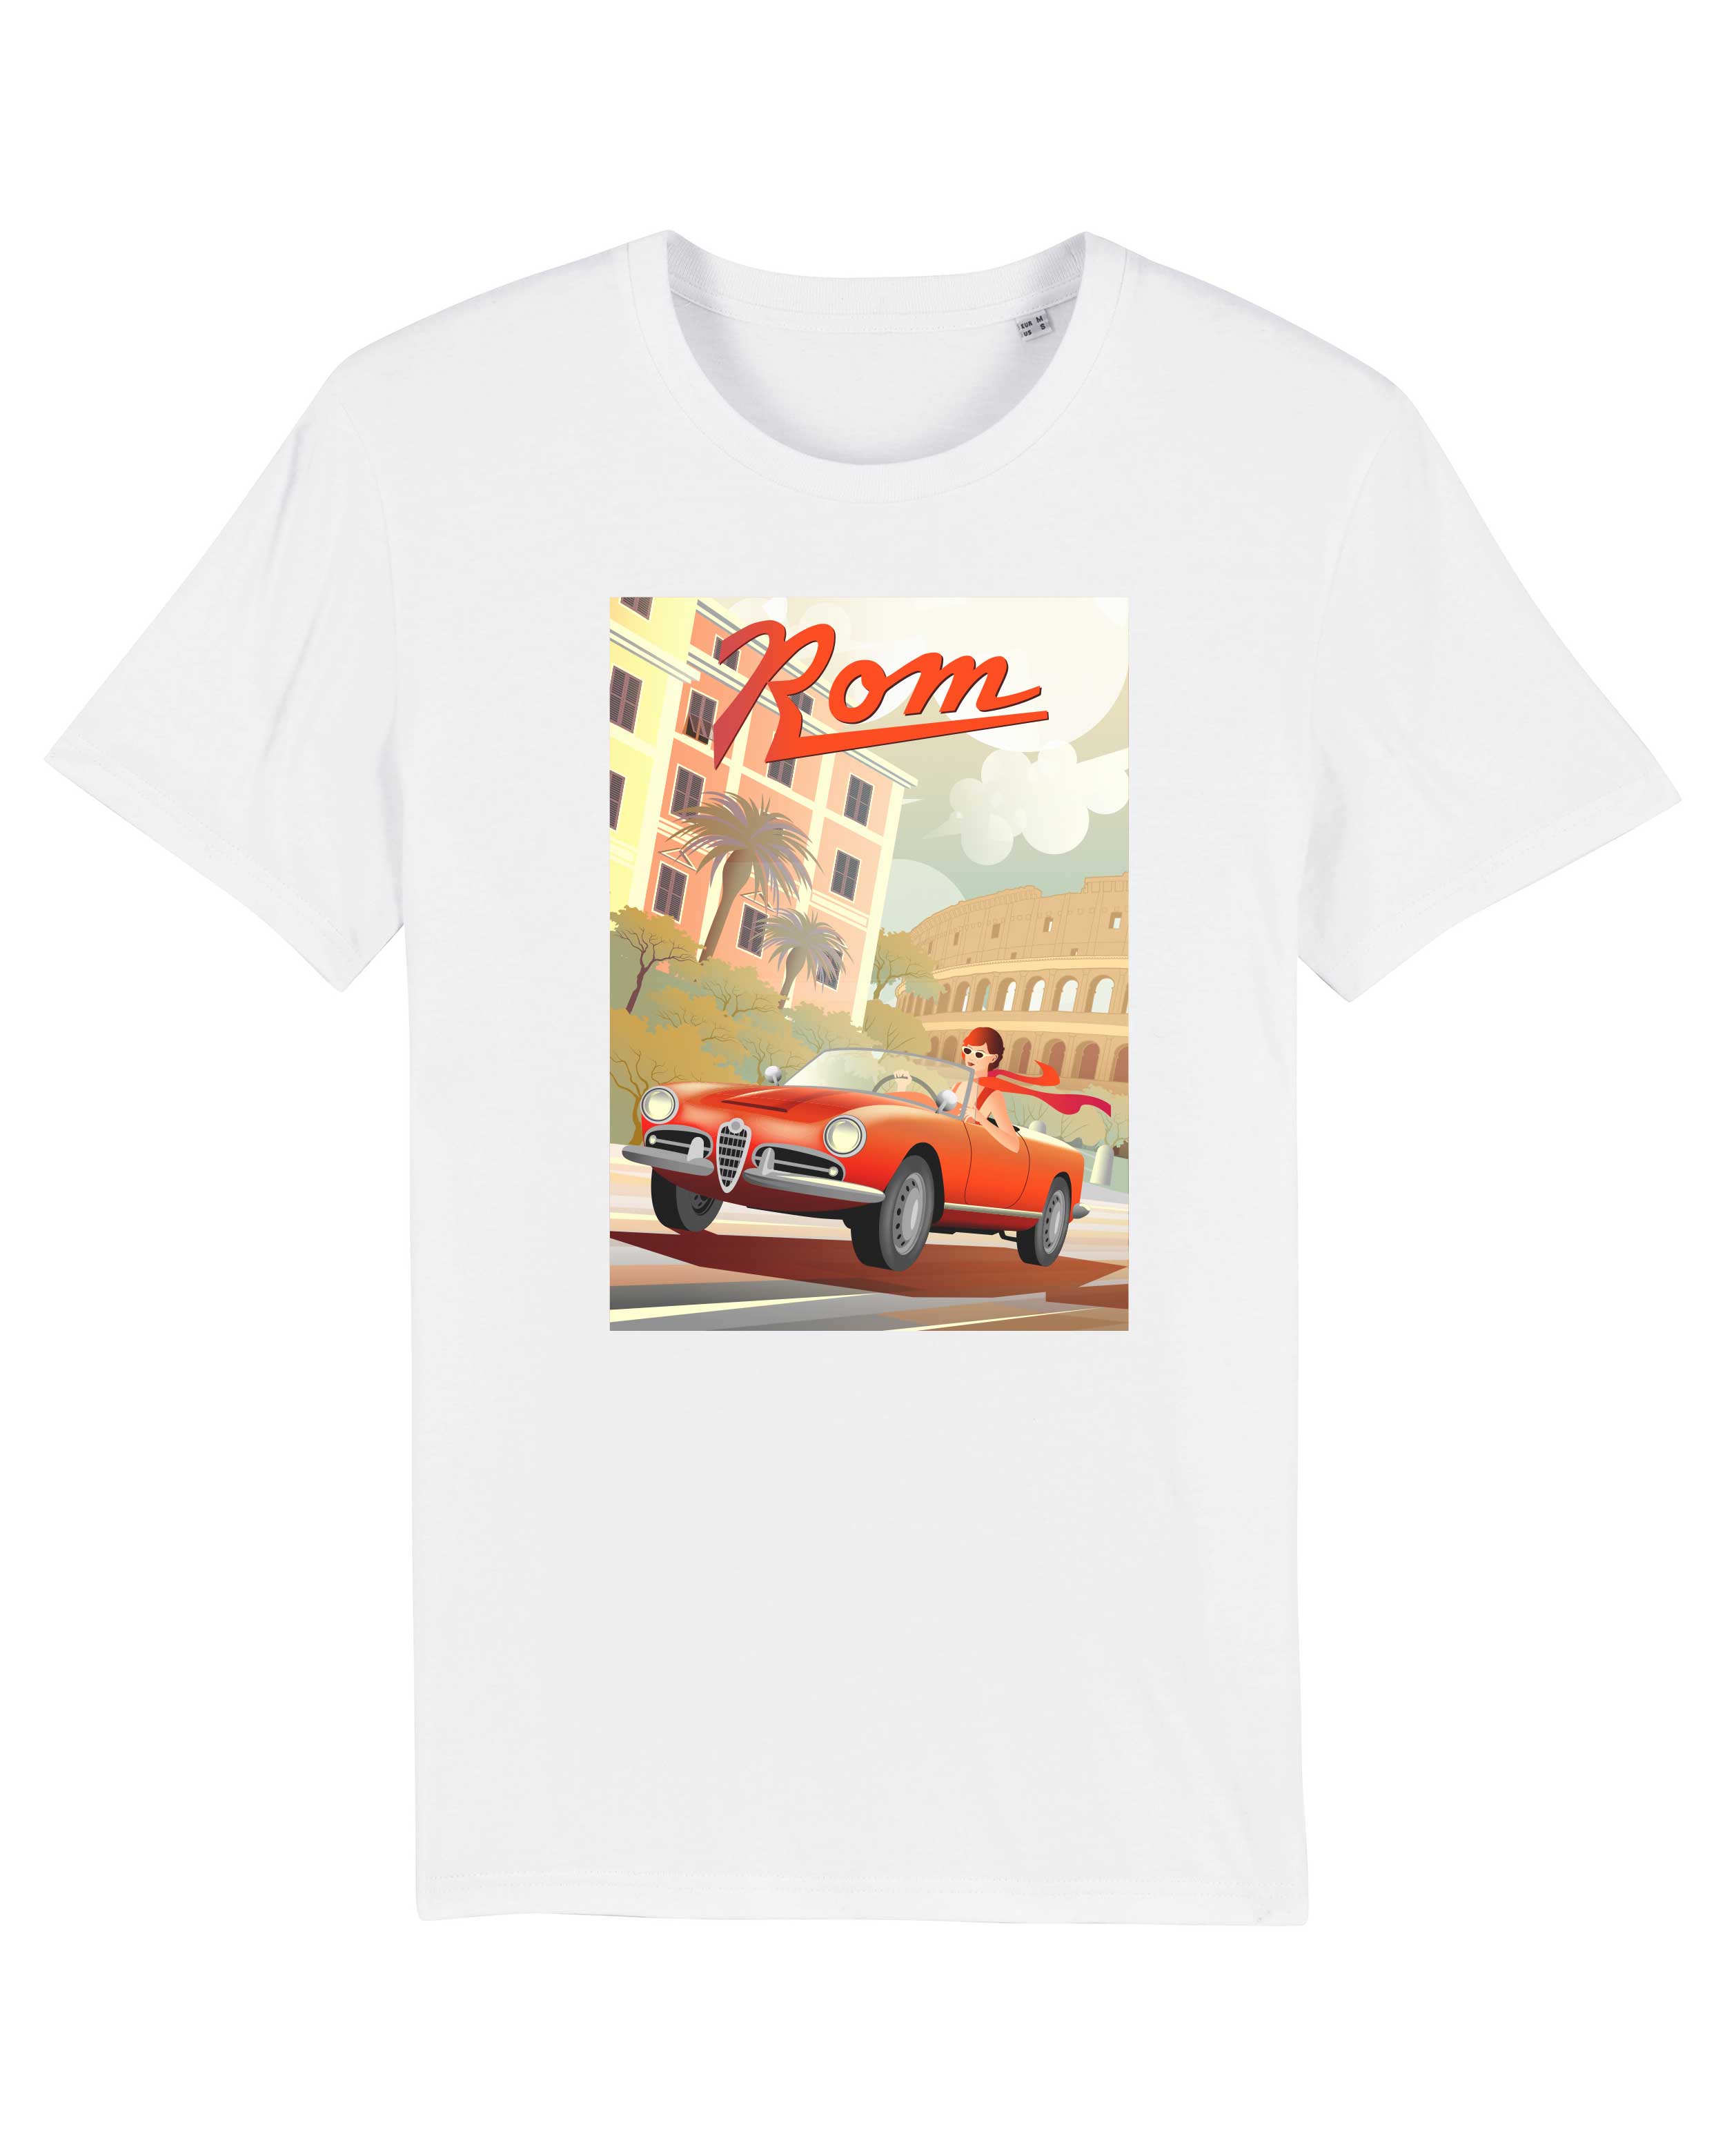 T-Shirt Rom Retro Stadt, Bio-Baumwolle, Unisex, Damen, Kids